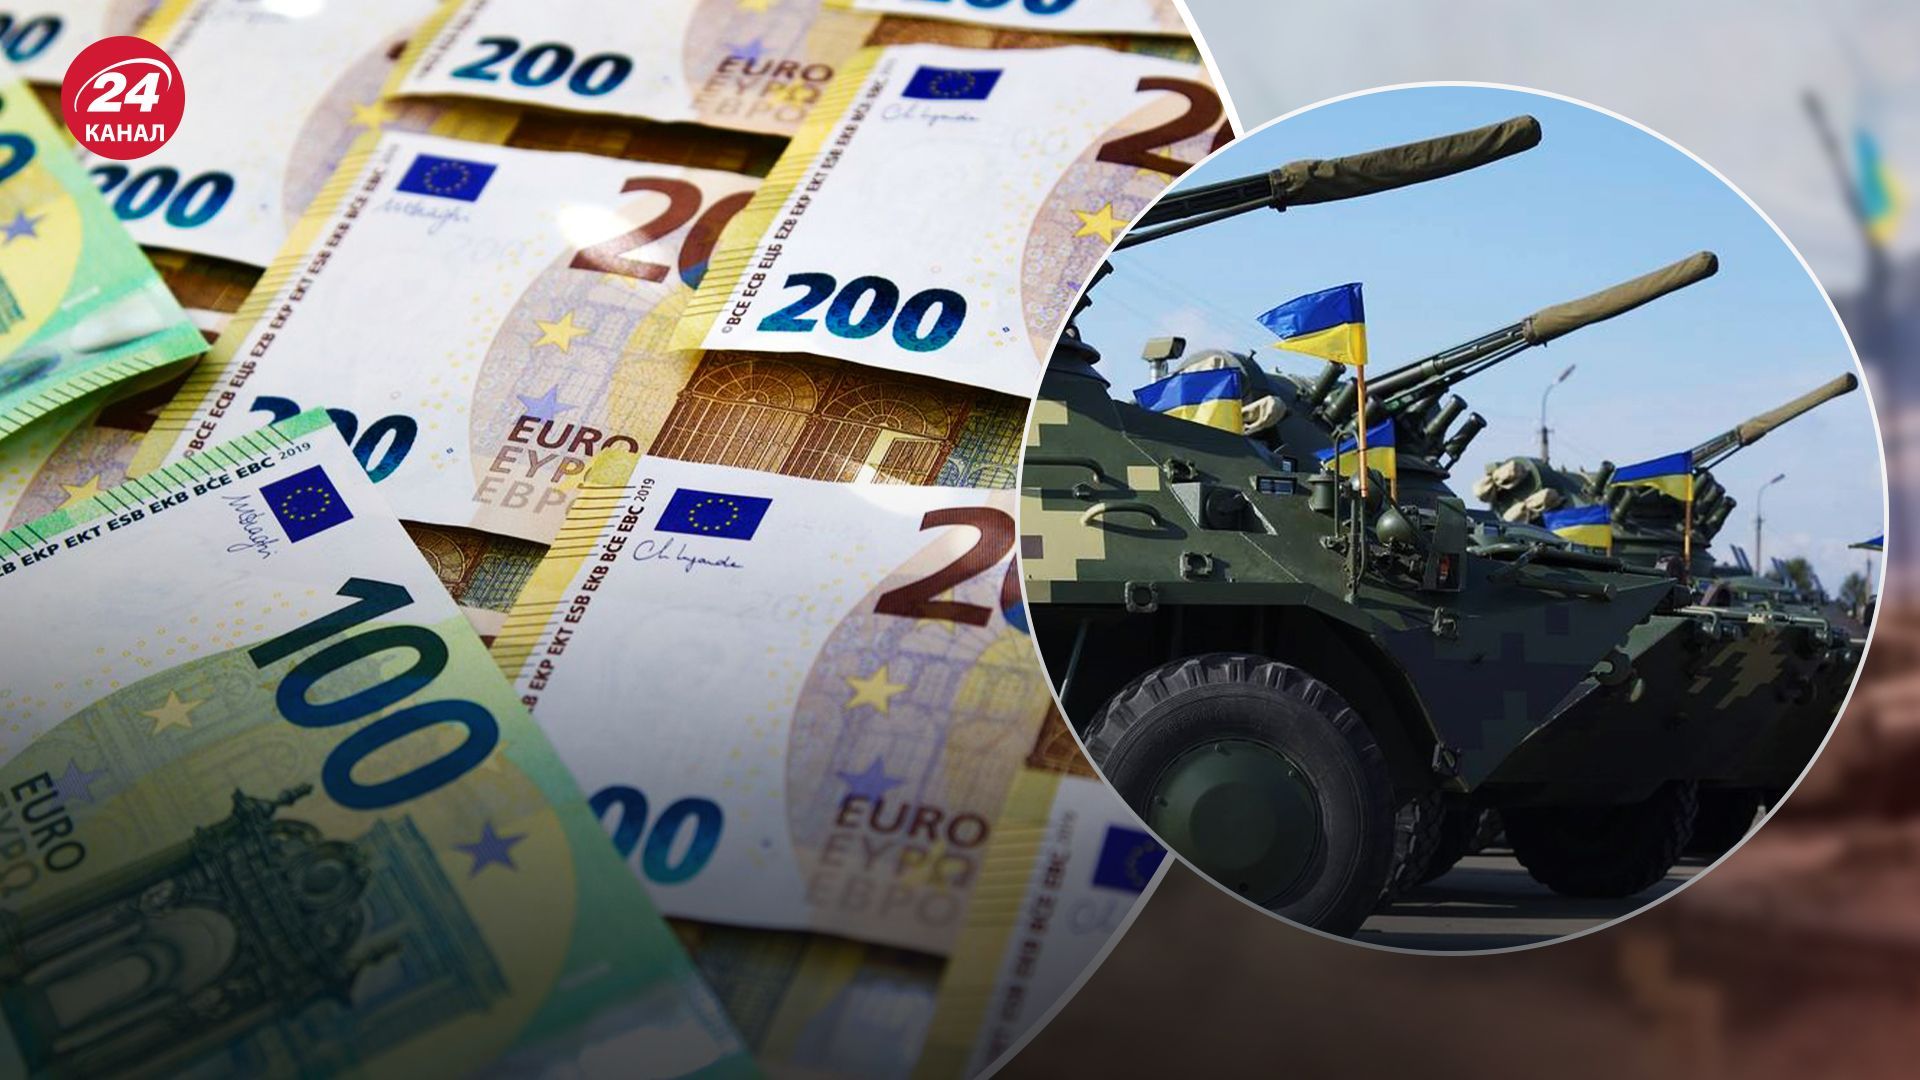 Європа наздогнала США за обсягами військової підтримки України  - дослідження